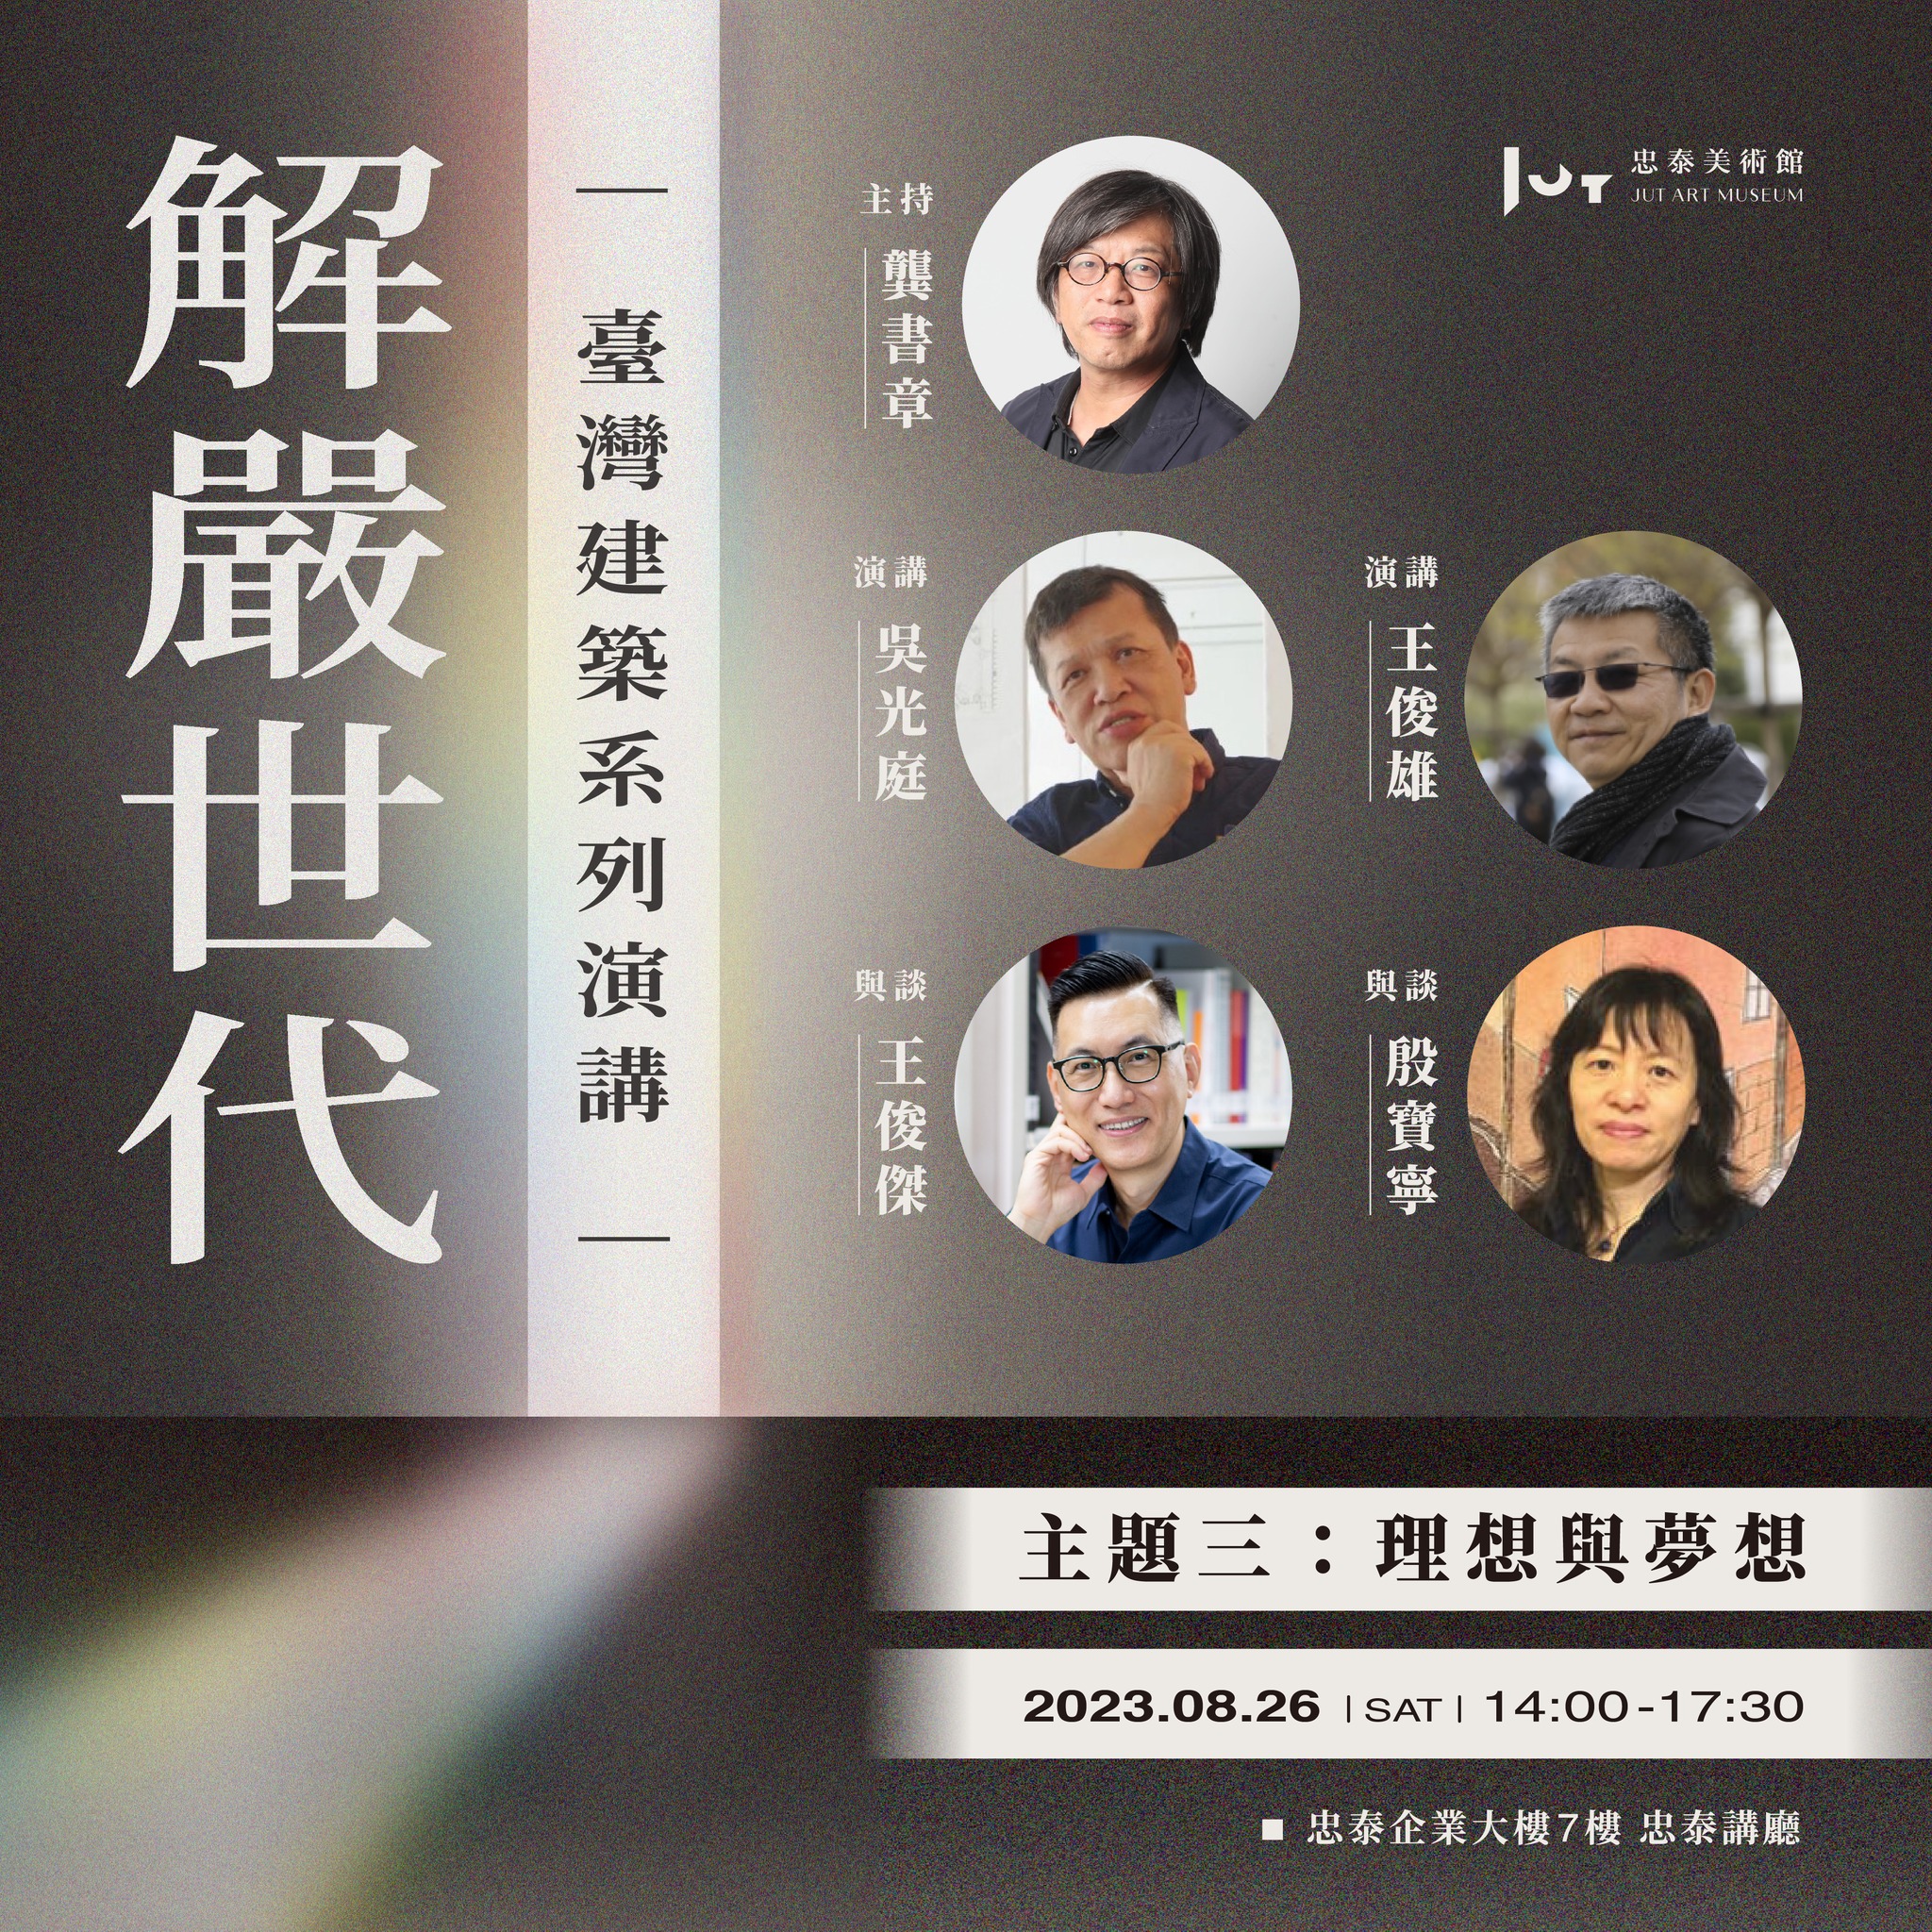 921後的再生 台灣解嚴世代建築師如何翻轉傷痛與希望？吳光庭、王俊雄、王俊傑與殷寶寧的對話